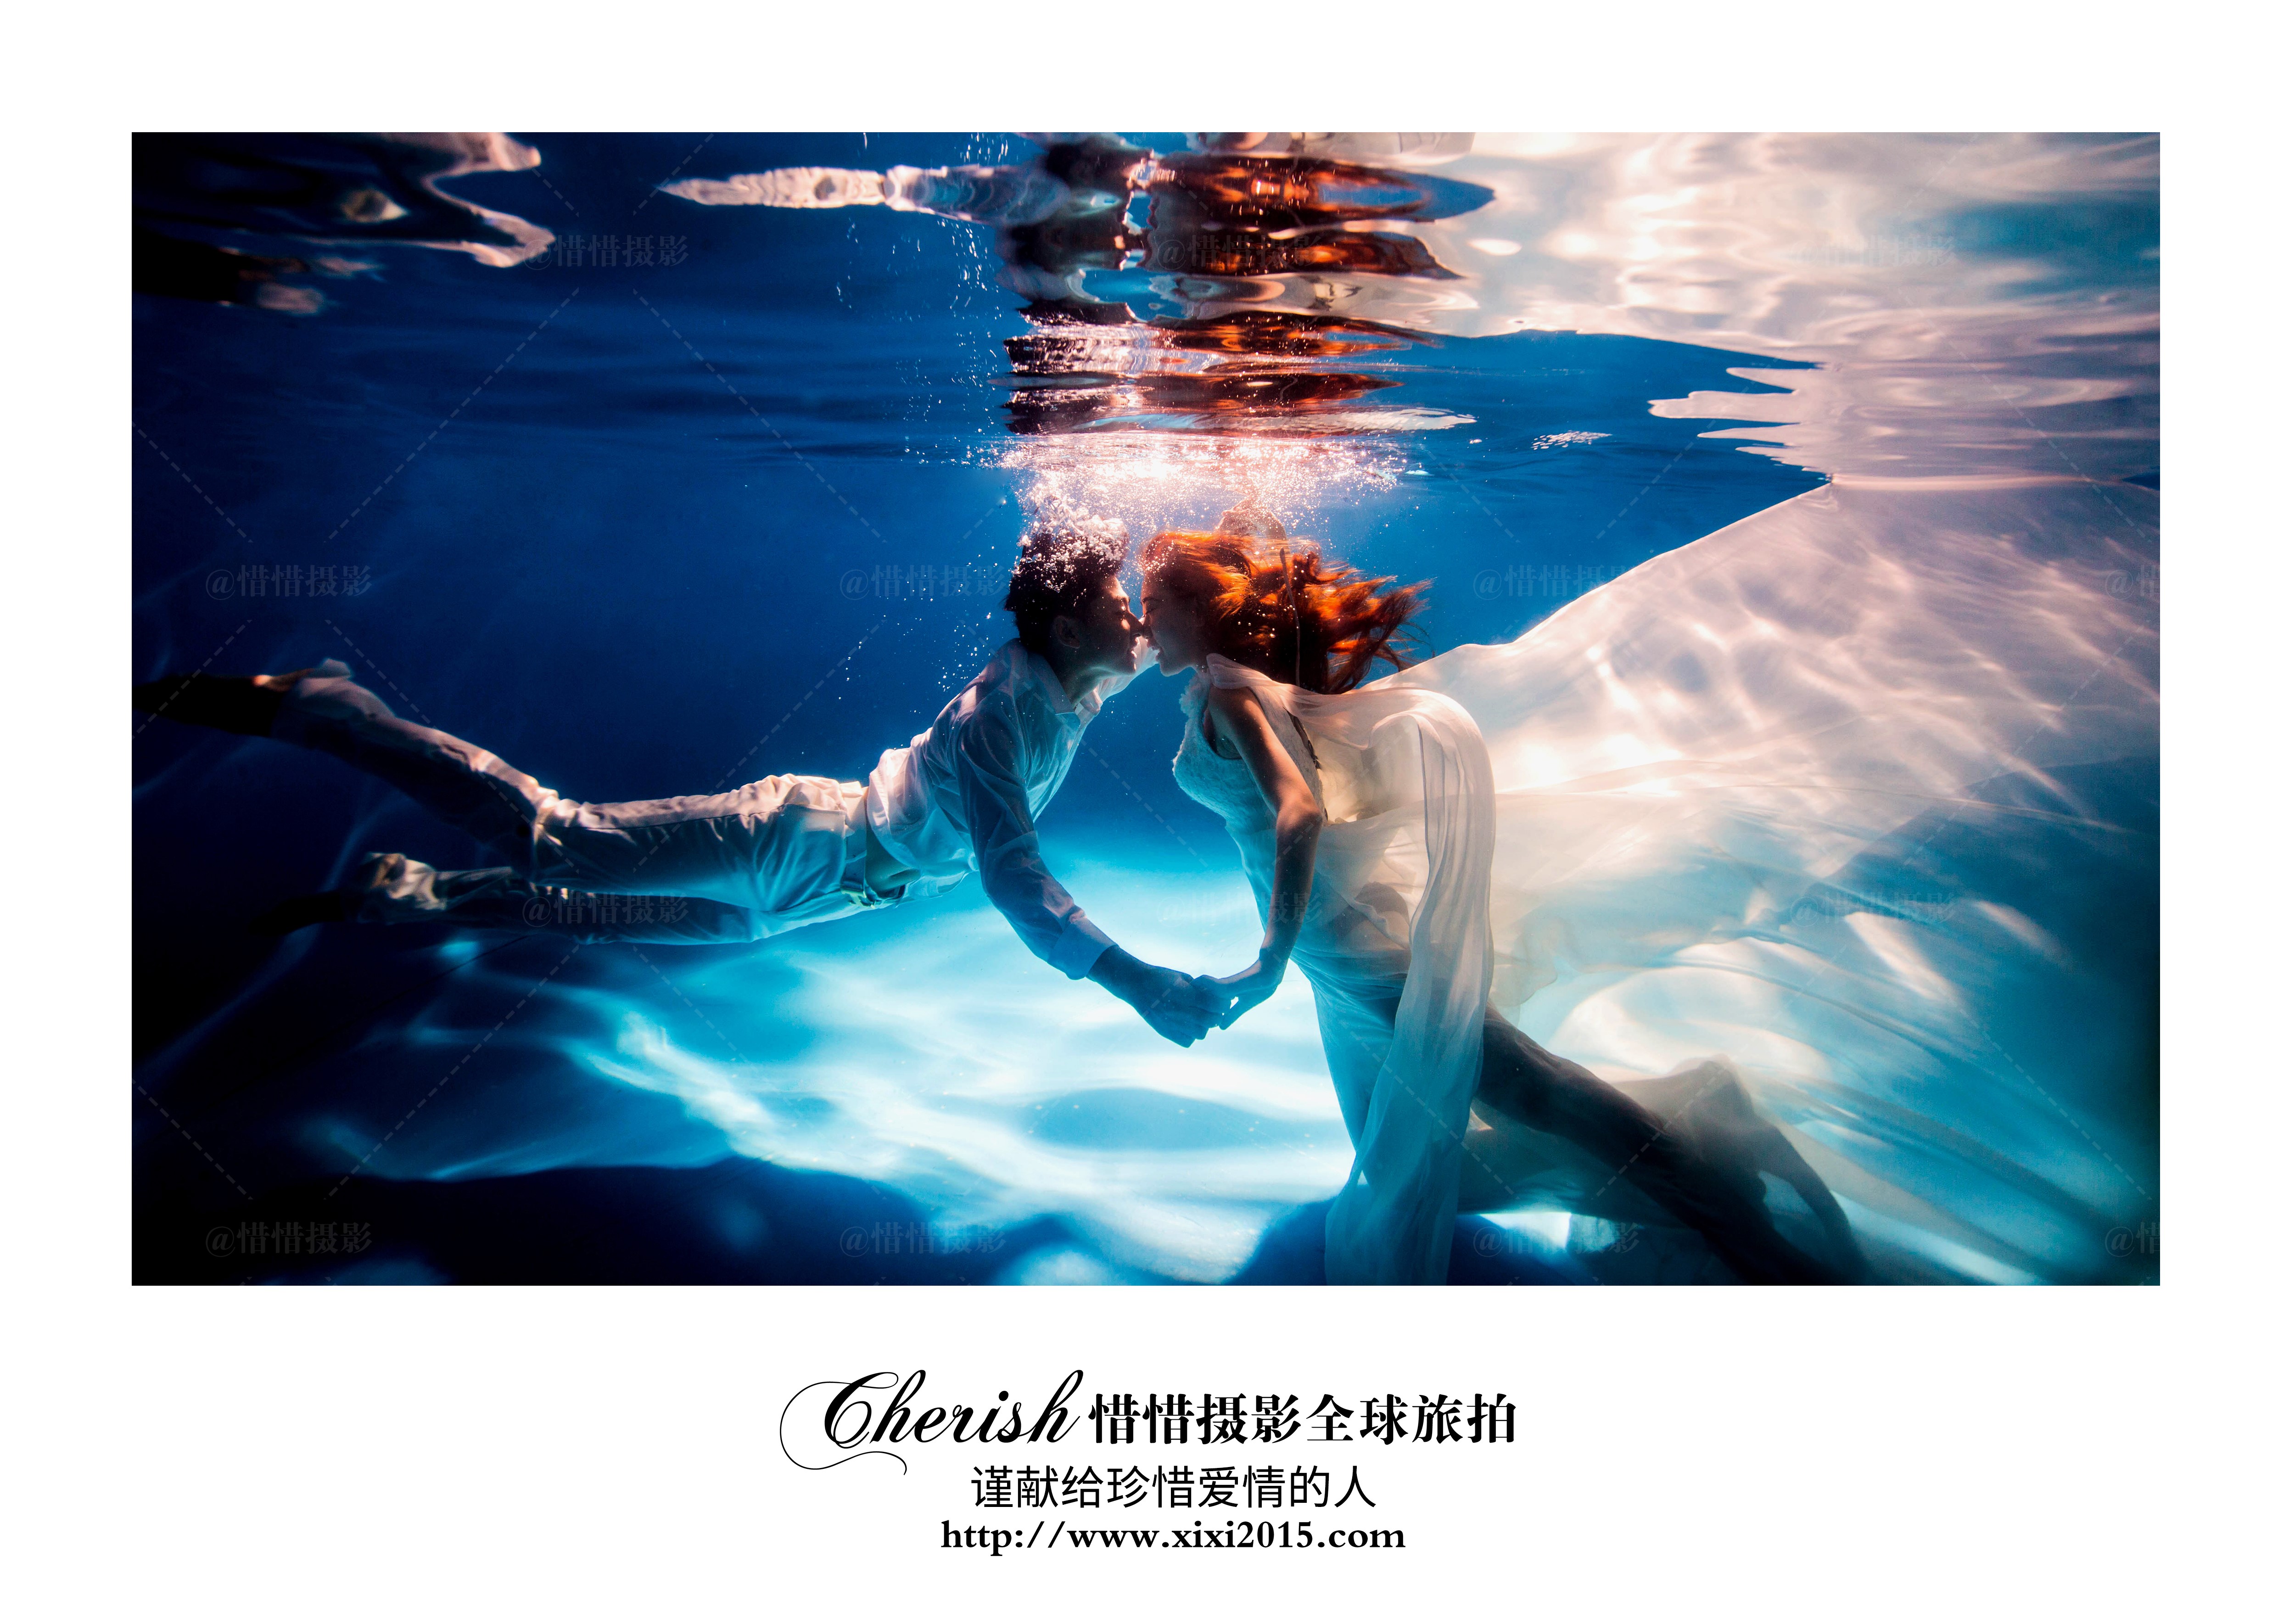 水下婚礼_大视觉摄影工作室_深圳婚纱摄影高端品牌